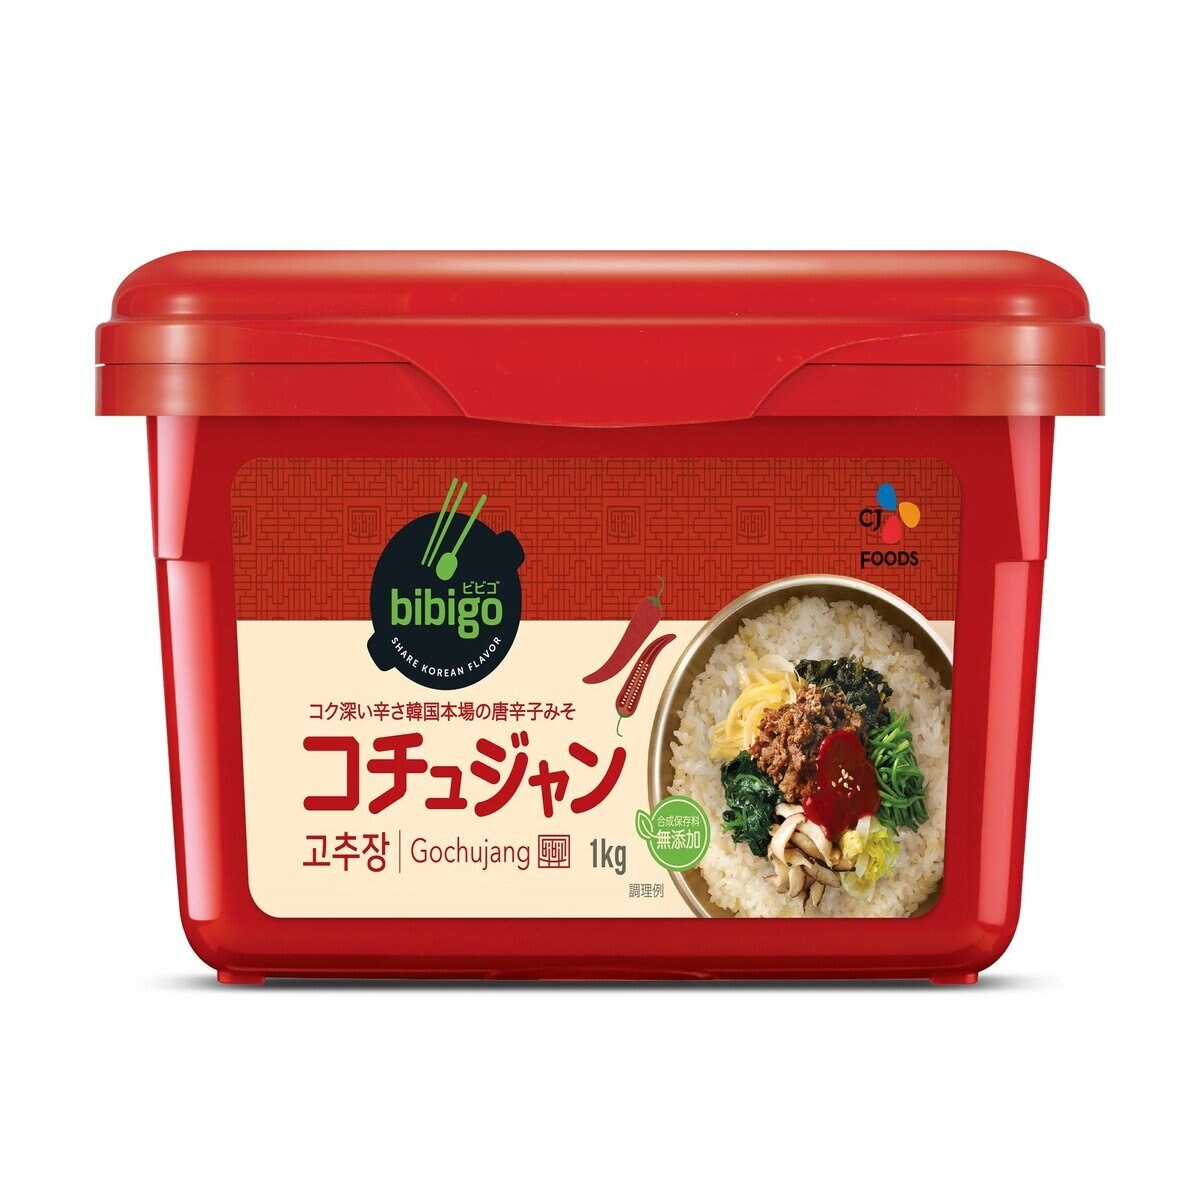 ビビゴ コチュジャン 1kg Costco Japan